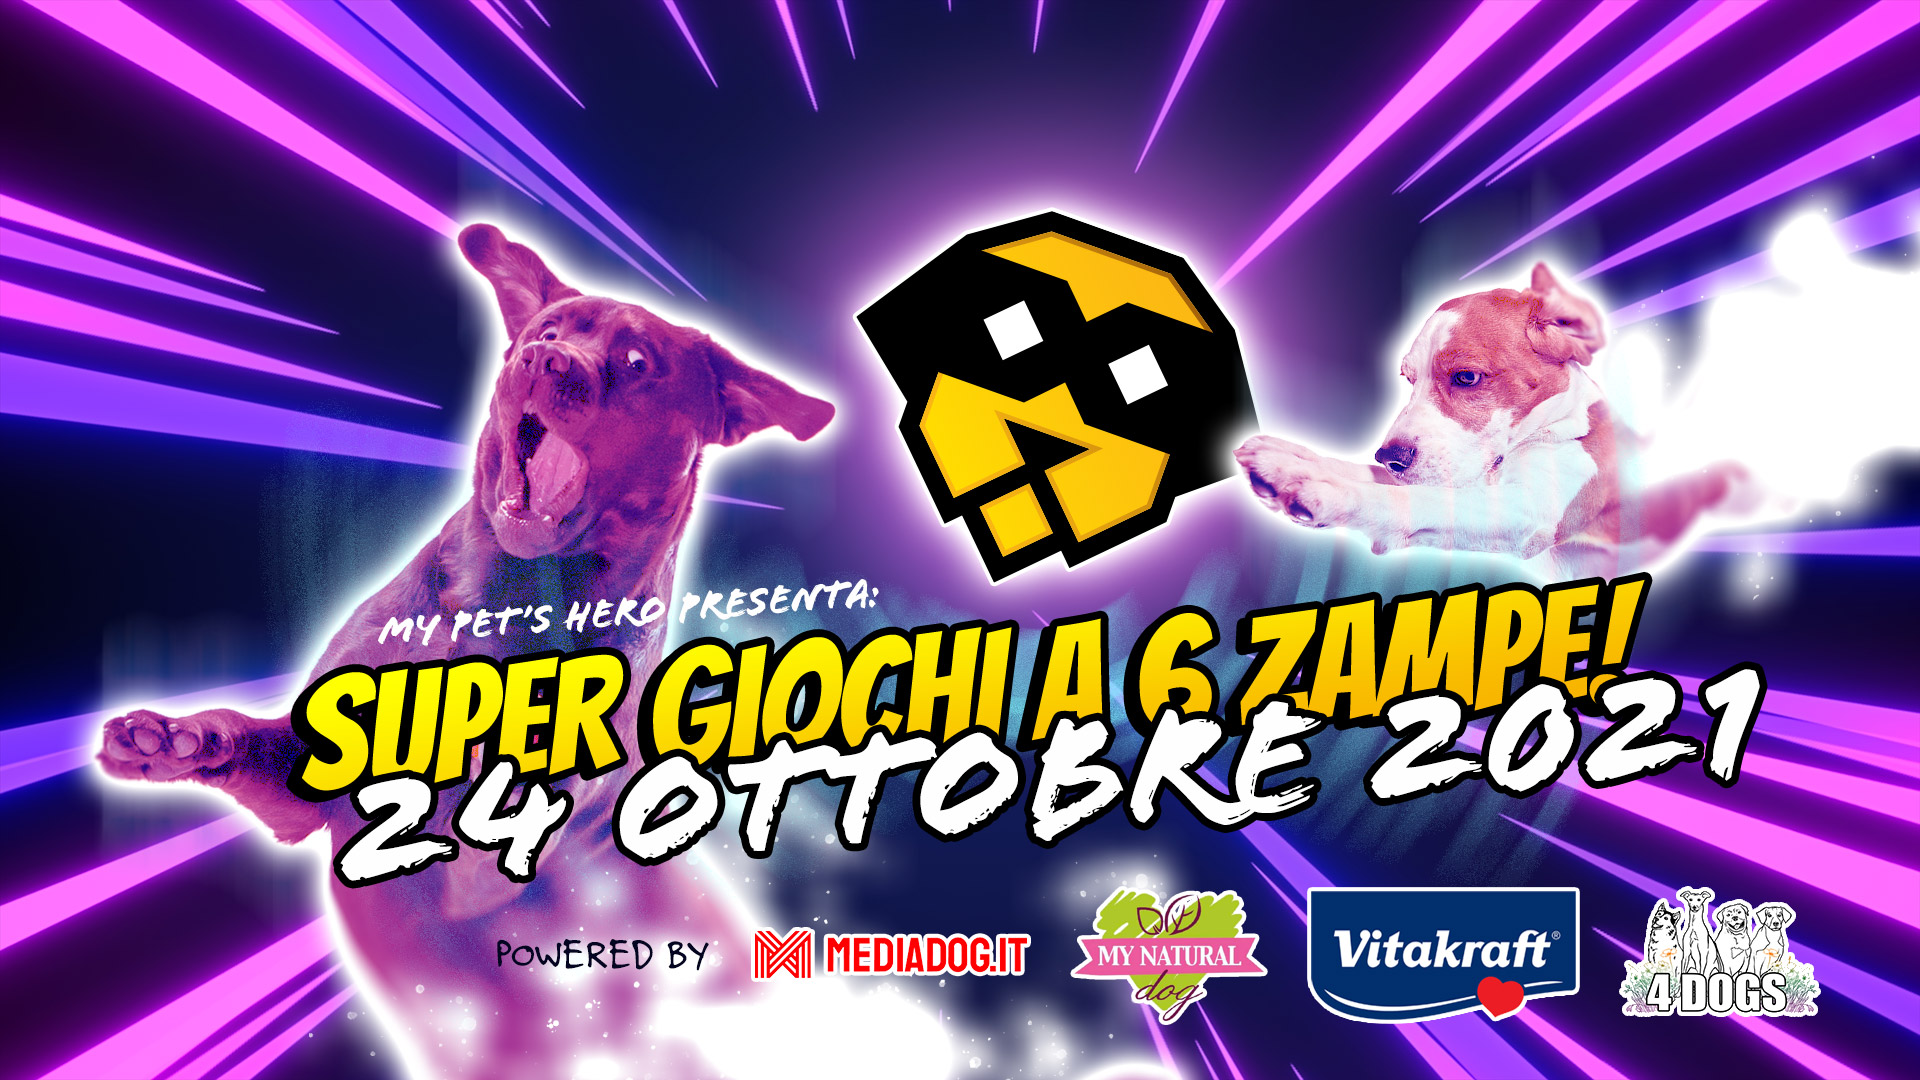 SuperGiochi 2021 indoor: Scopri i Super poteri del tuo cane! Organizzato dal team My Pet's Hero